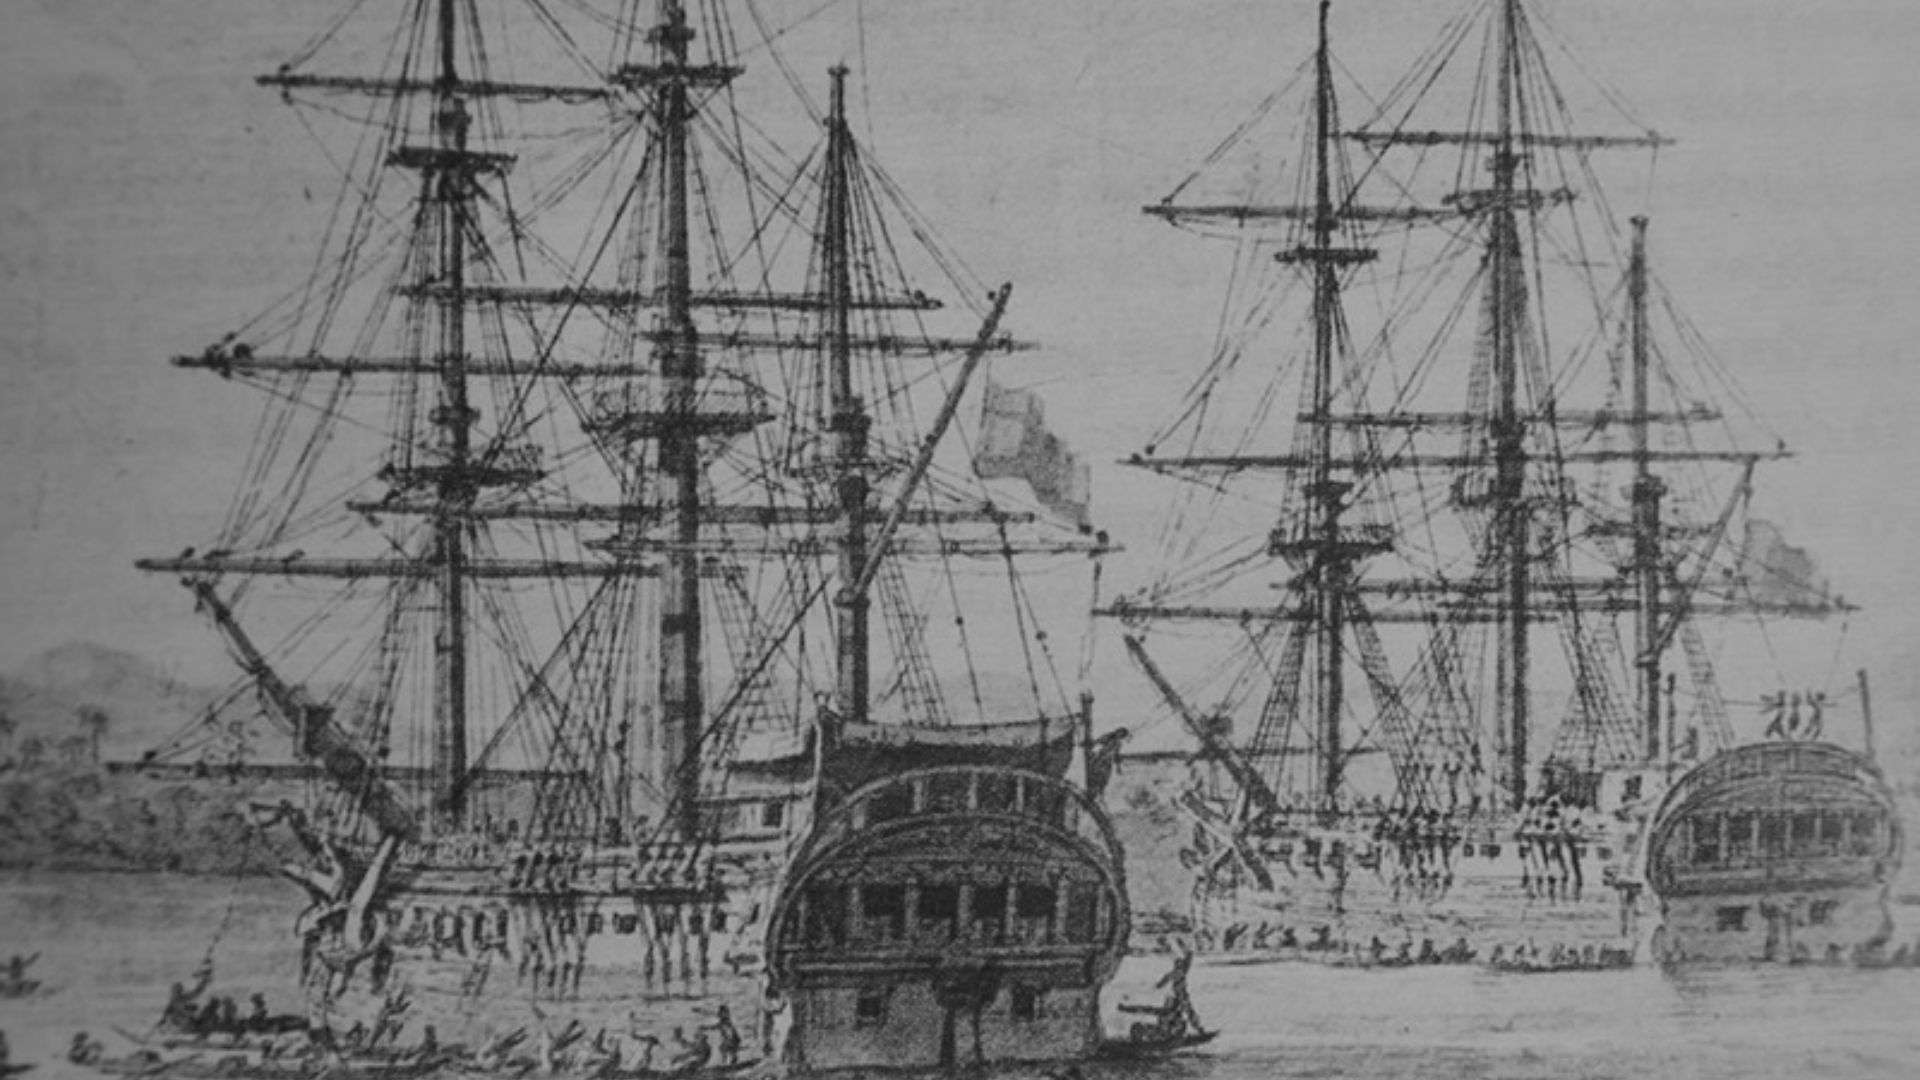 Las corbetas 'Atrevida' y 'Descubierta', los navíos que participaron en la Expedición Malaspina